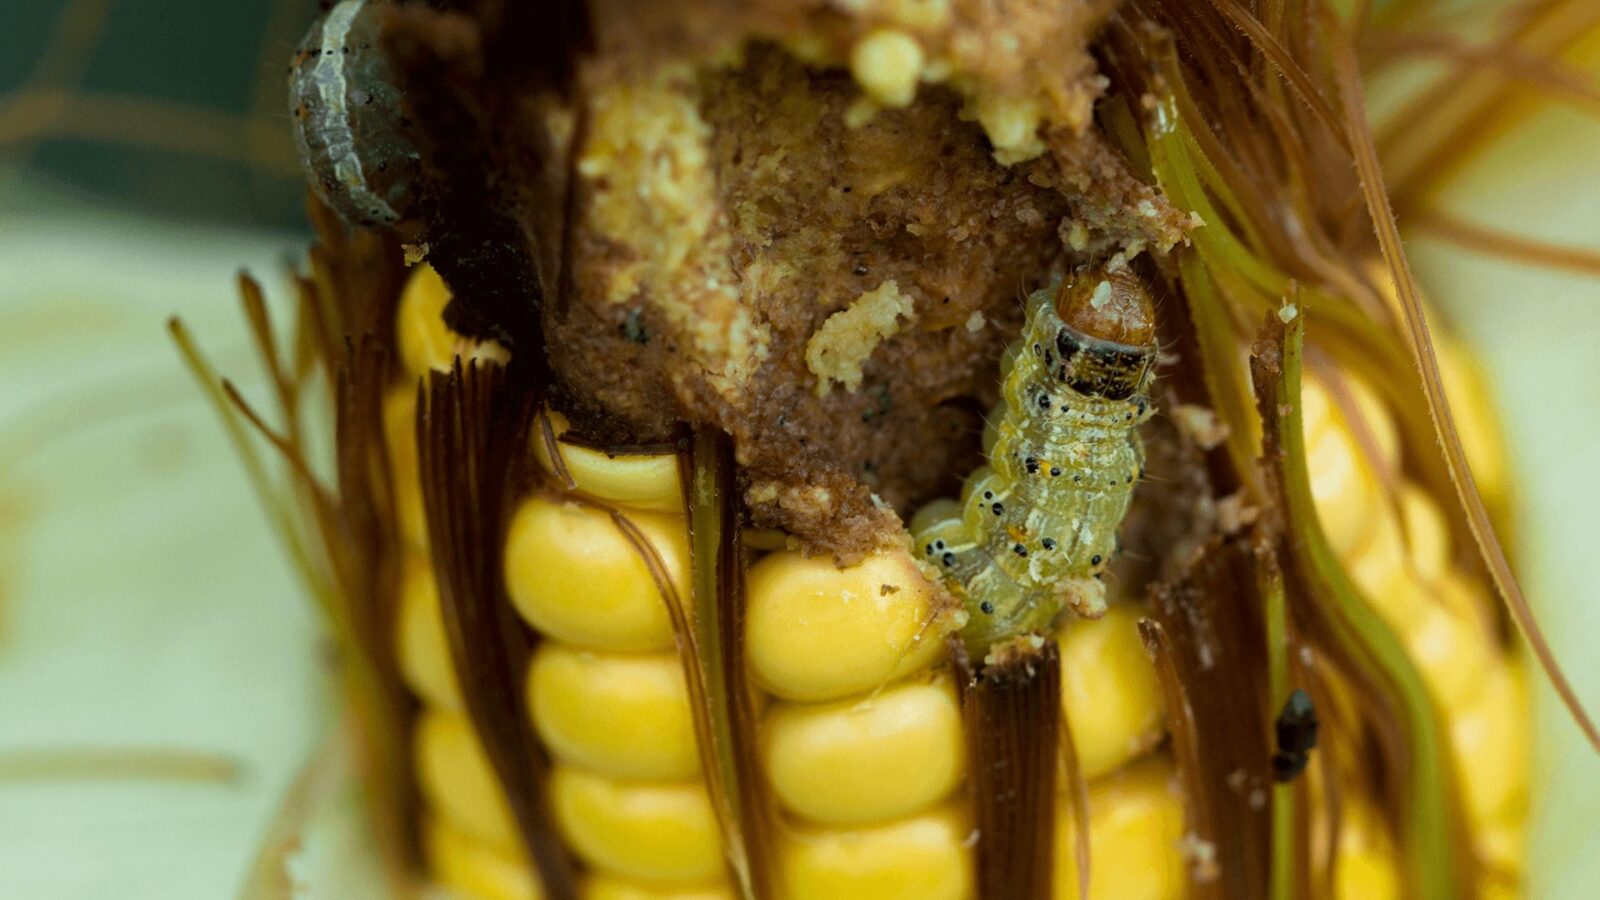 Lagarta comendo na espiga do milho